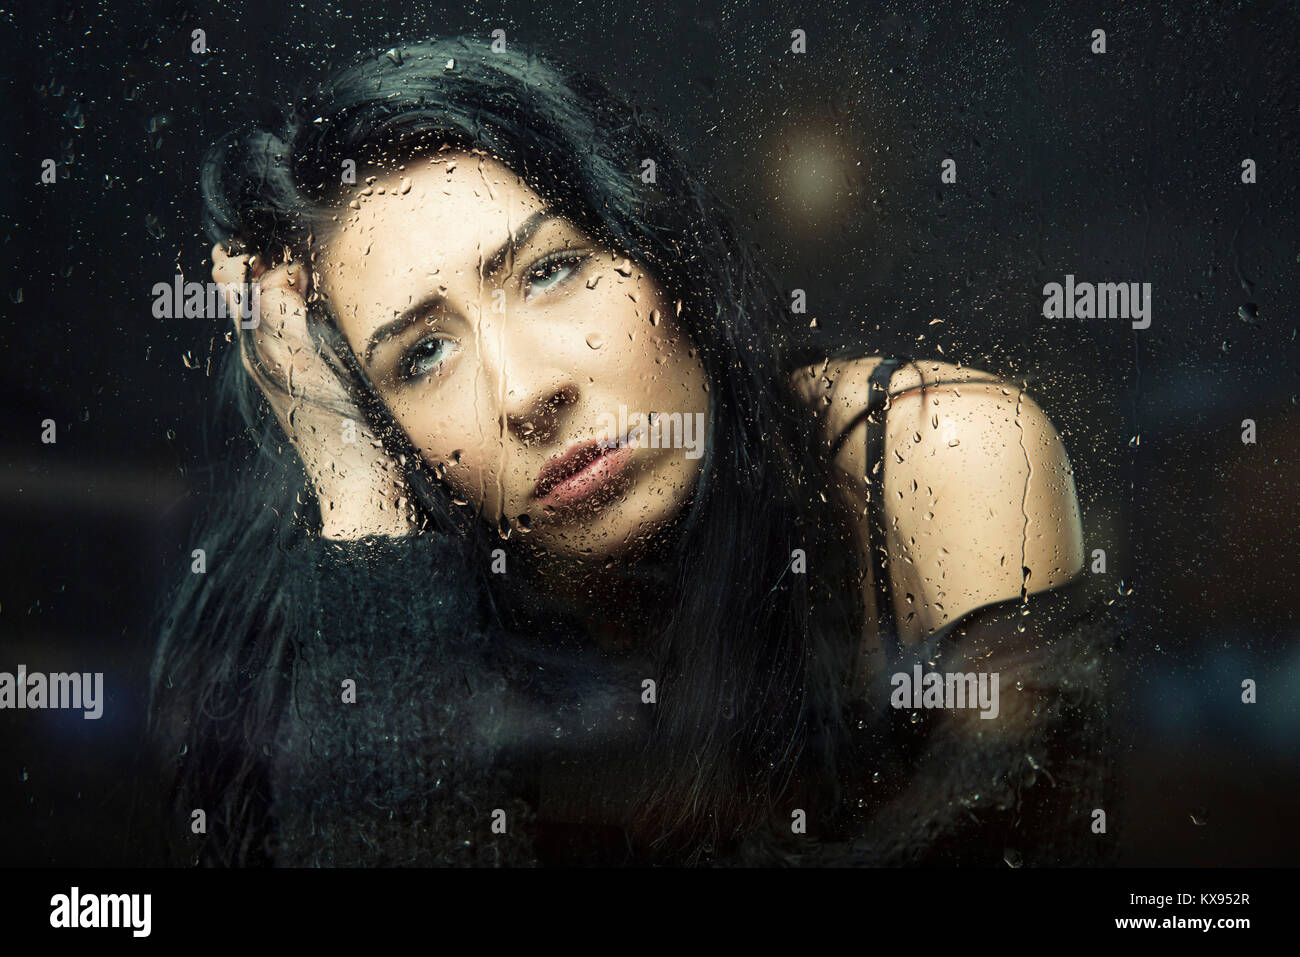 Frau traurig, deprimiert, die Hand auf den Kopf am verregneten Fenster closeup filmischen Porträt sitzen Stockfoto